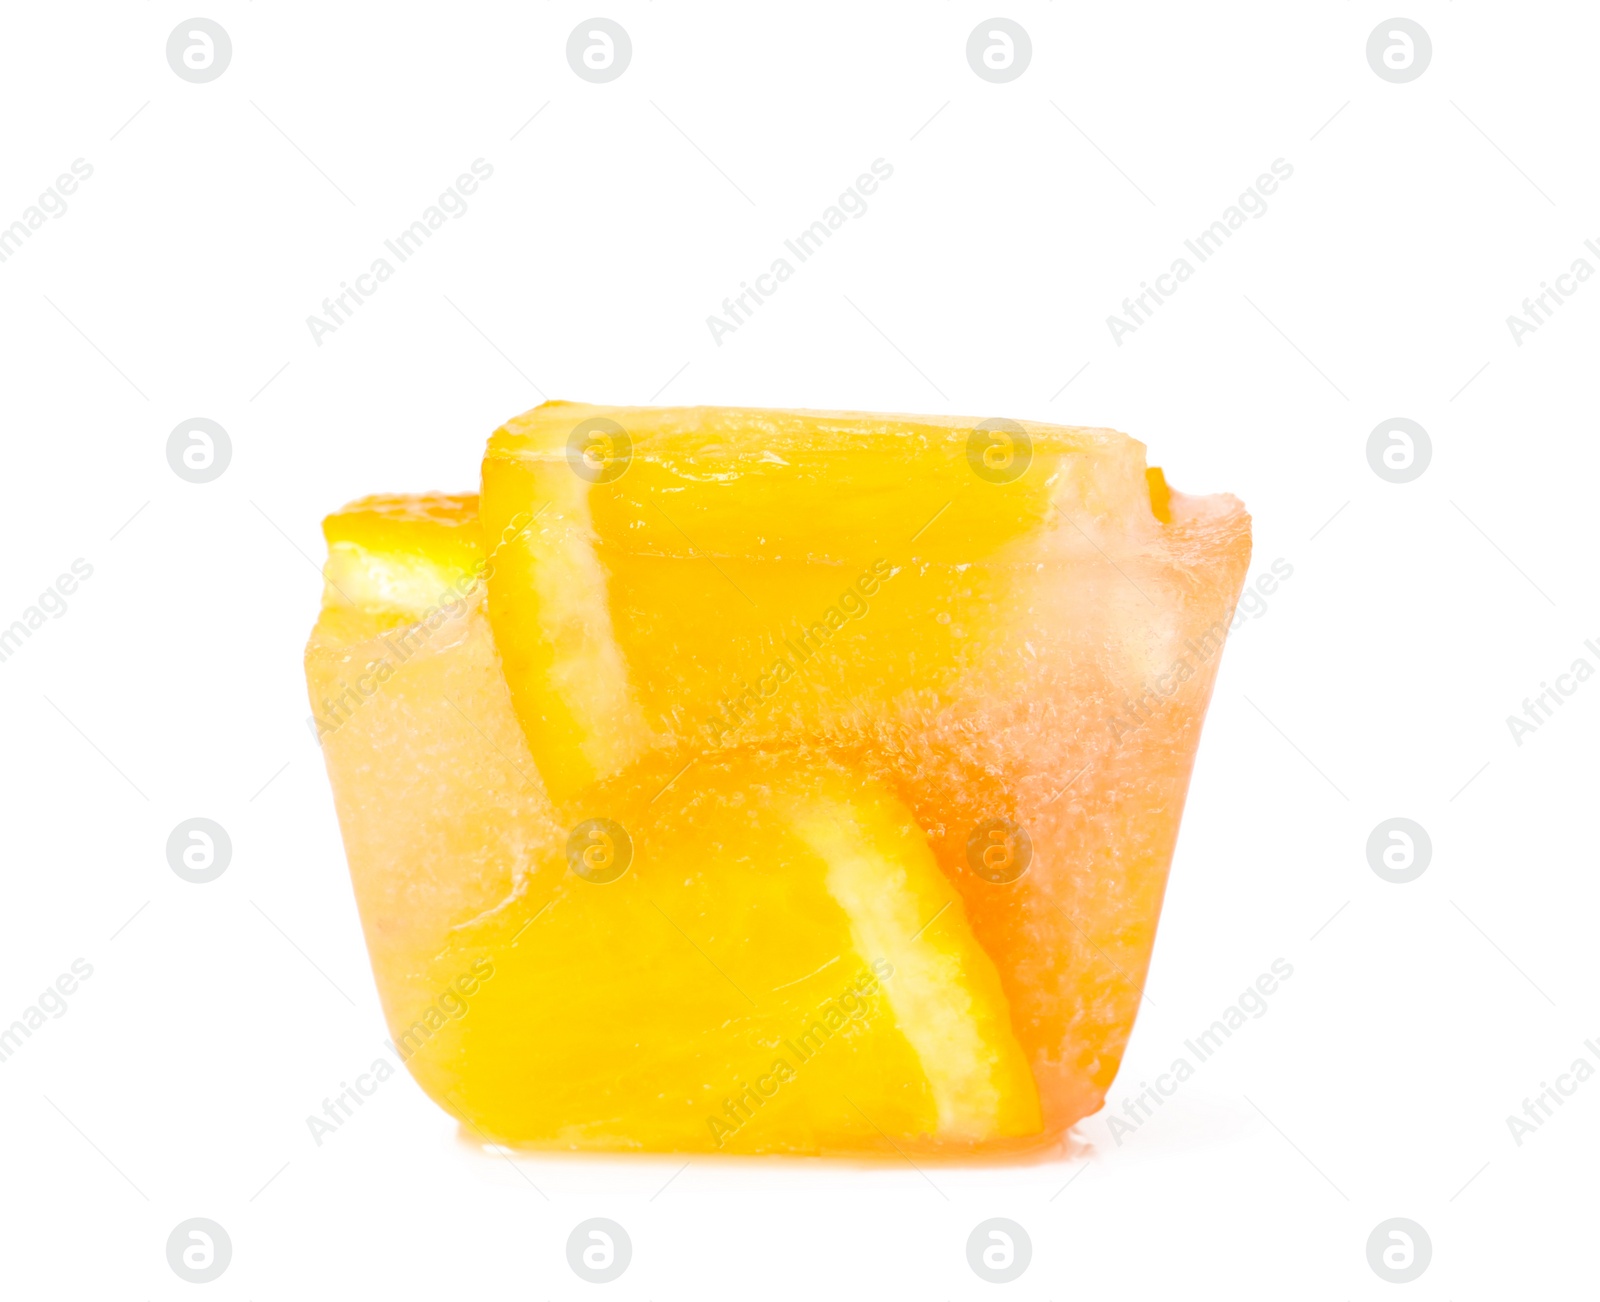 Photo of Ice cube with orange slices on white background